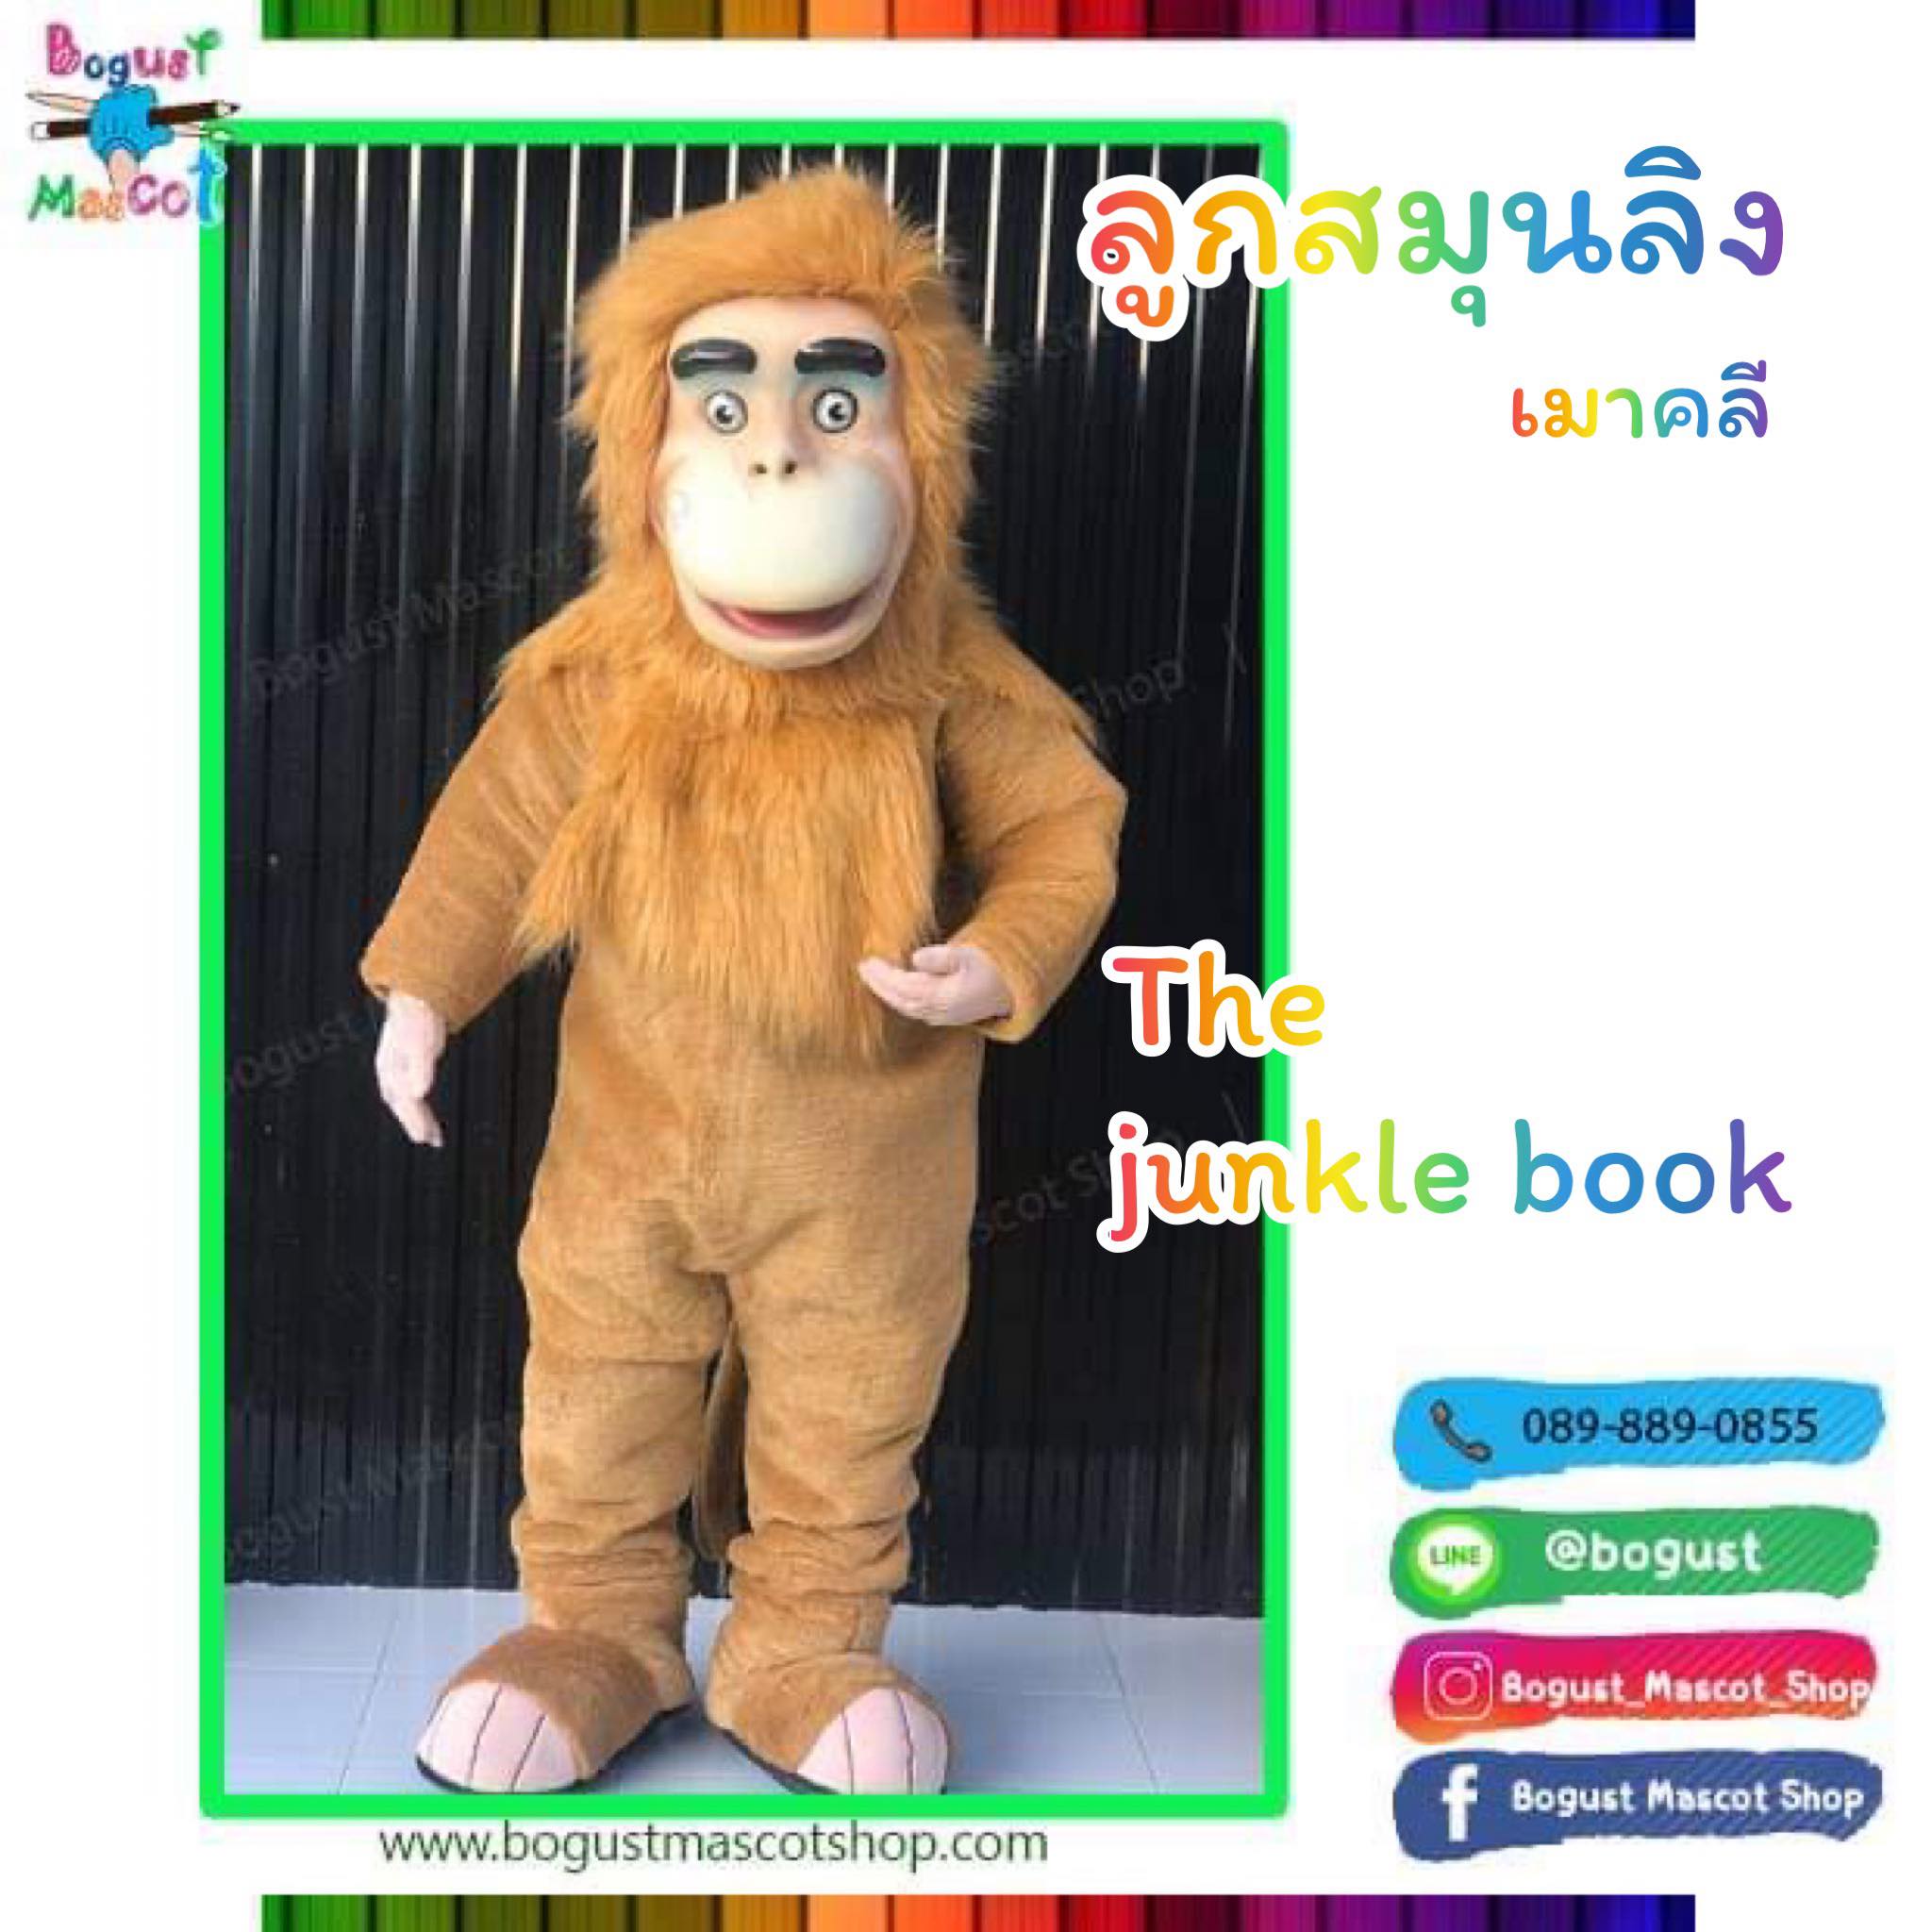 มาสคอต (Mascot) ---> ลิง , เมาคลี , The Junkle Book